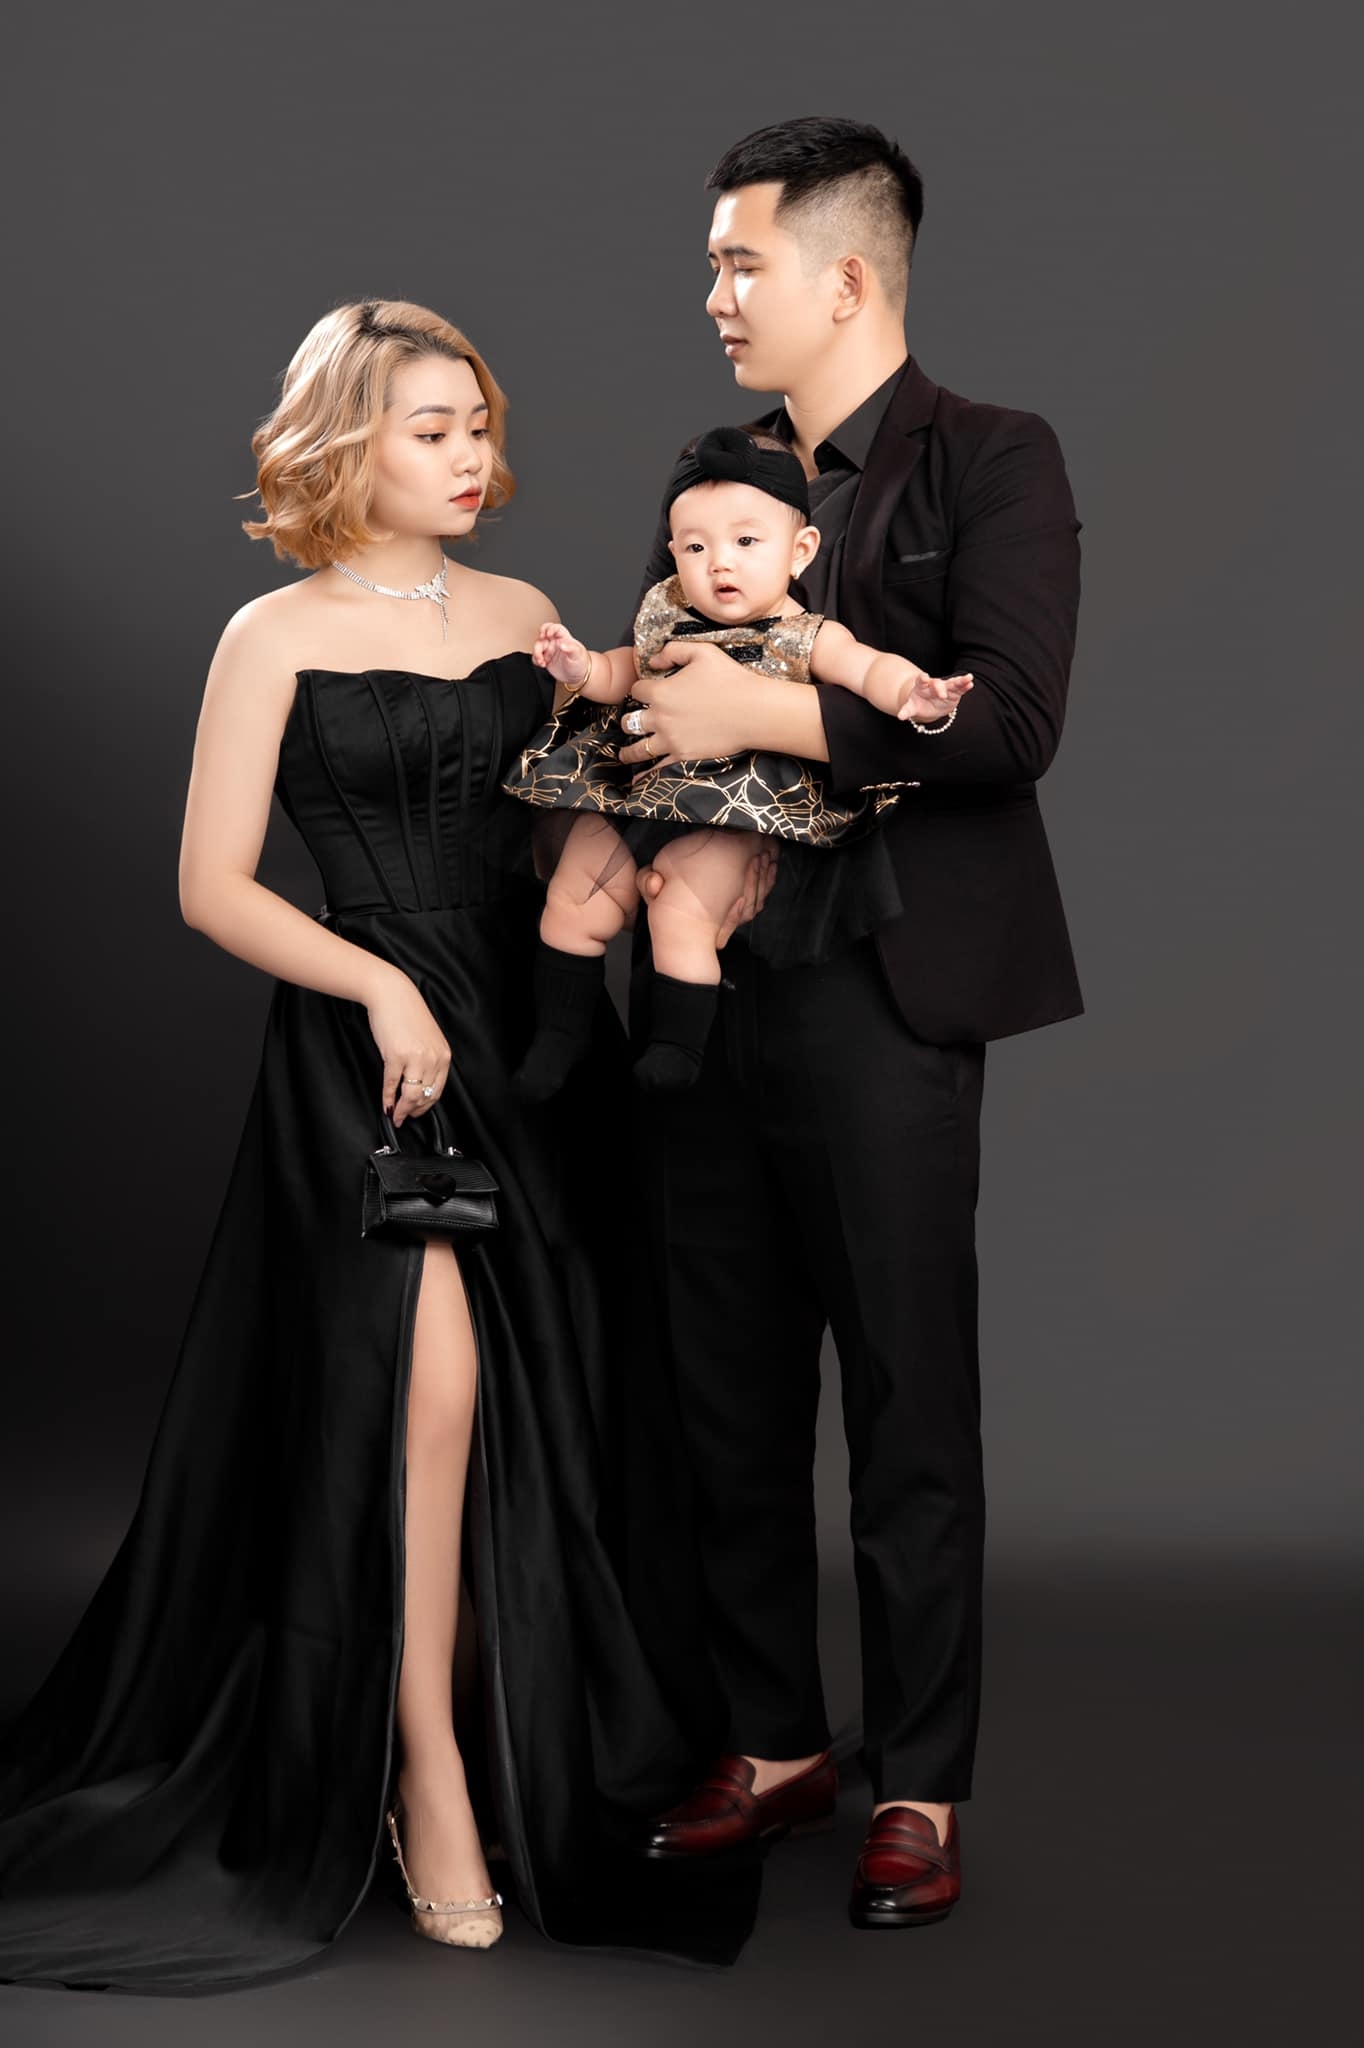 Anh gia dinh 2 1 - 35 cách tạo dáng chụp ảnh gia đình 3 người đẹp nhất - HThao Studio